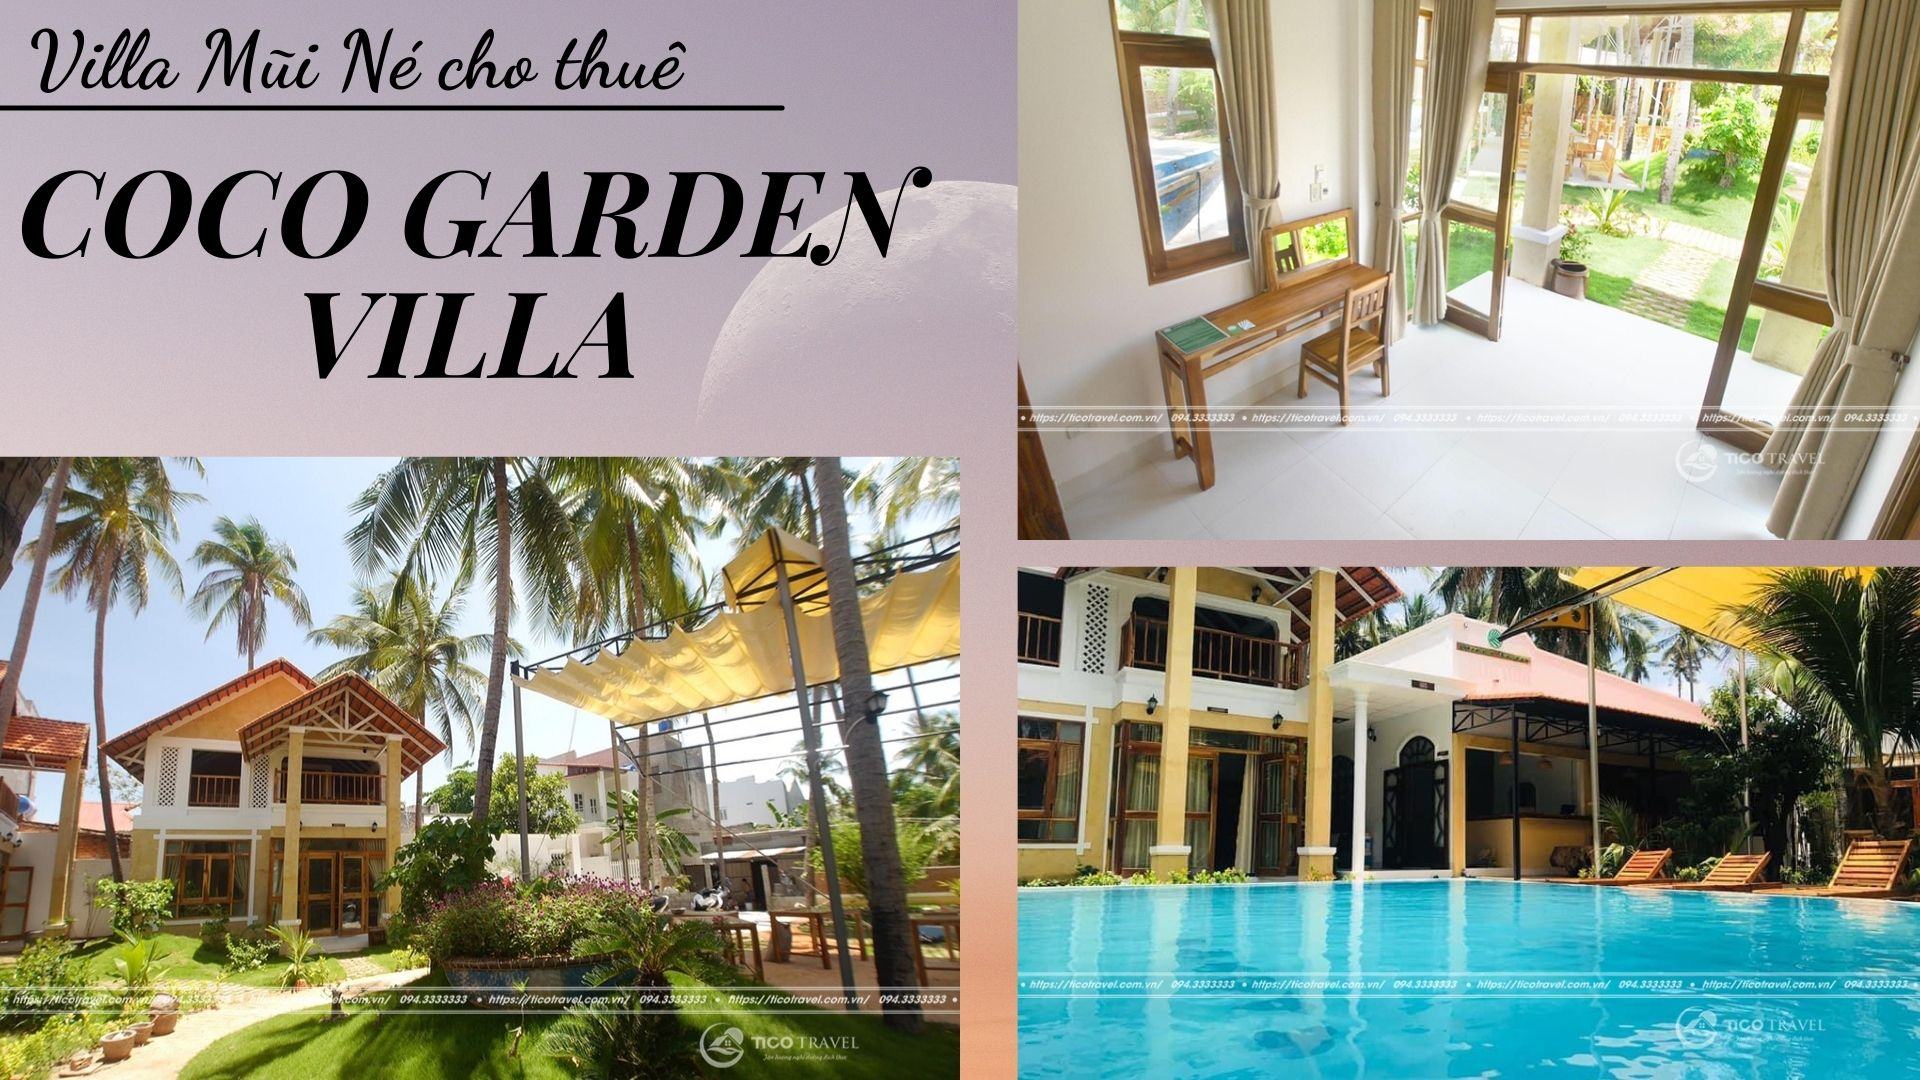 Coco Garden Villa Mũi Né diện tích lớn với hồ bơi rộng